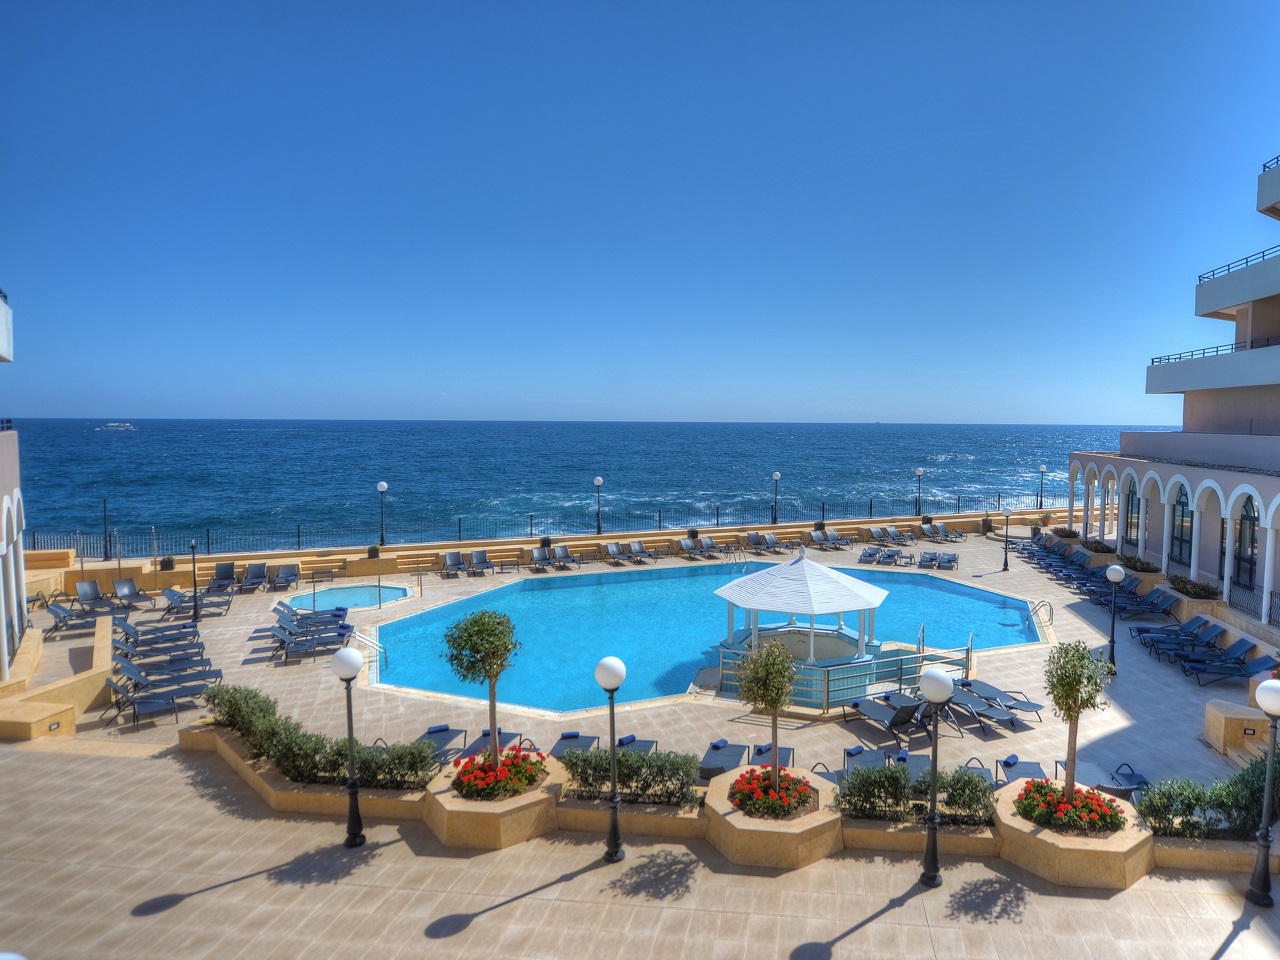 Radisson Blu Resort, Malta St. Julian’s (24)